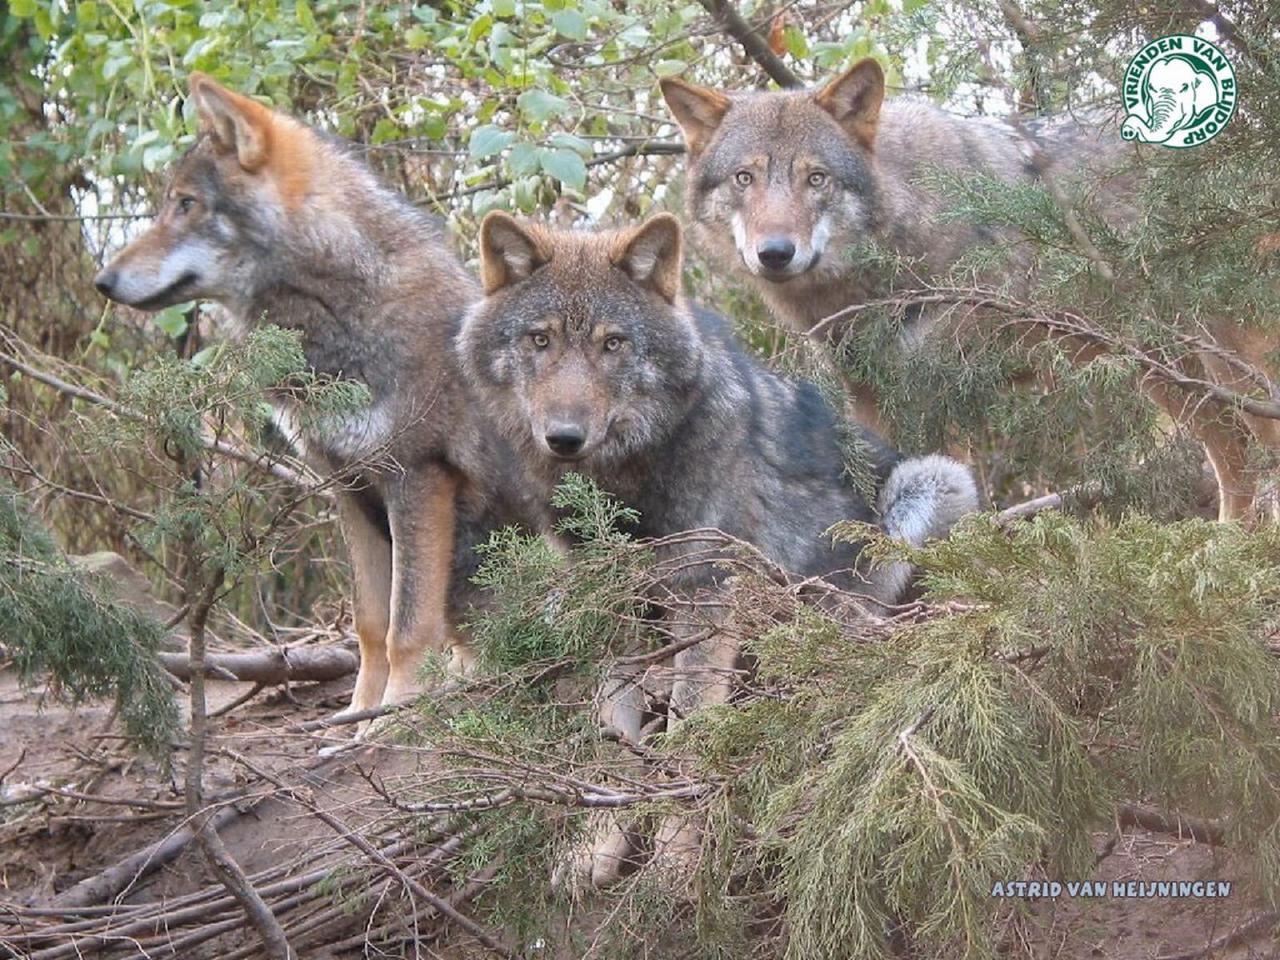 обои 3 wolfs Astrid van heijningen фото